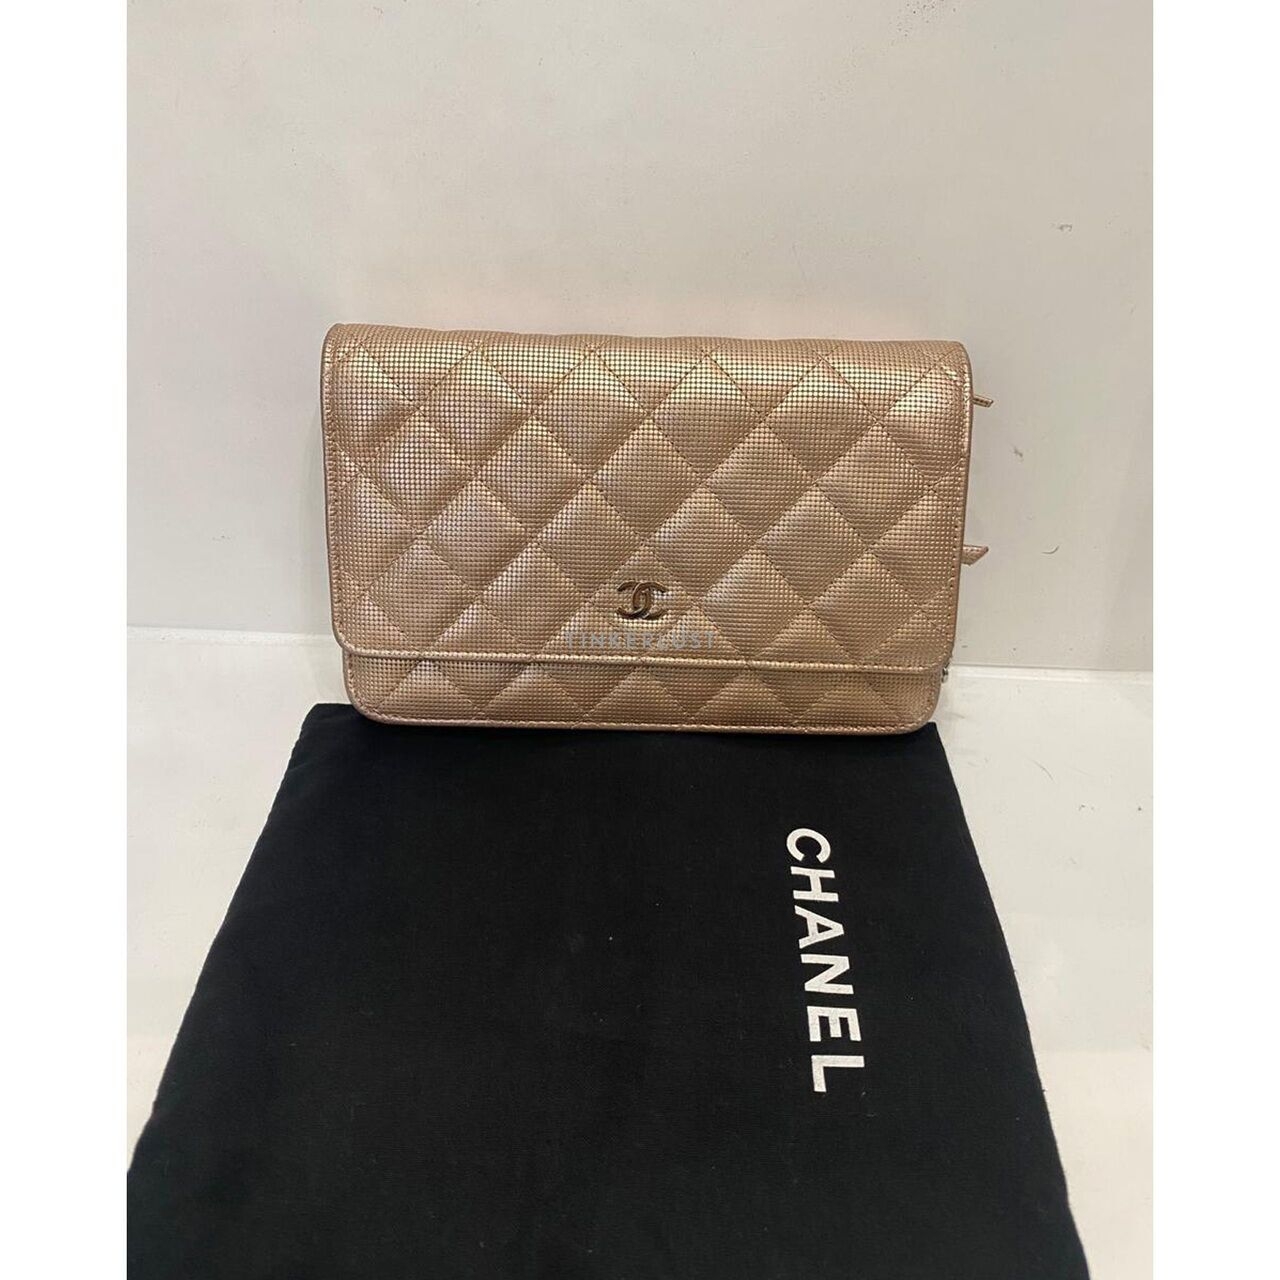 Chanel WOC Rose Gold SHW #21 2015 Sling Bag